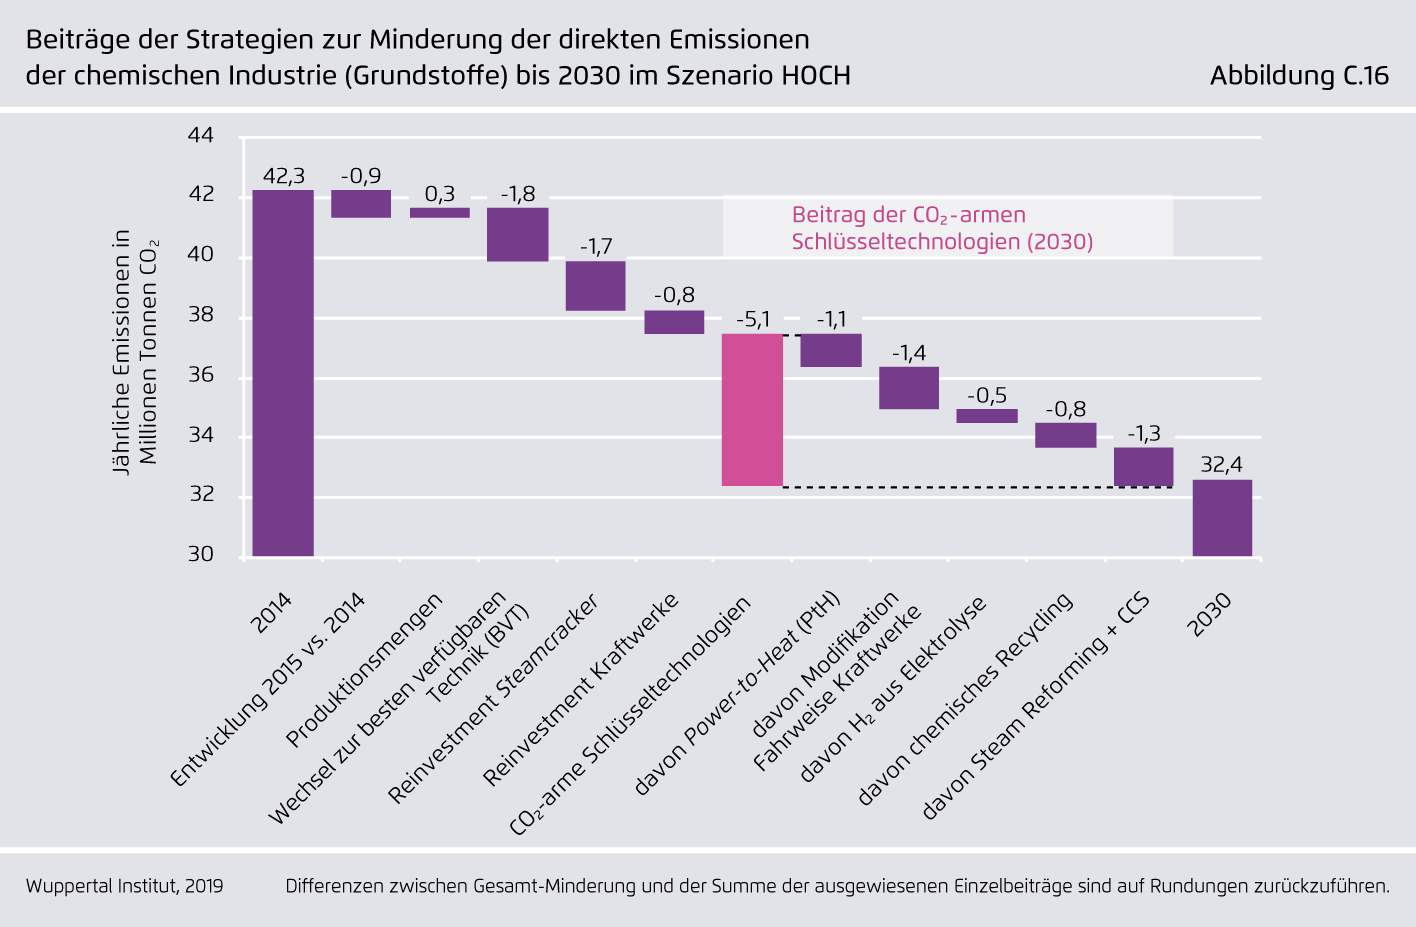 Preview for Beiträge der Strategien zur Minderung der direkten Emissionen der chemischen Industrie (Grundstoffe) bis 2030 im Szenario HOCH